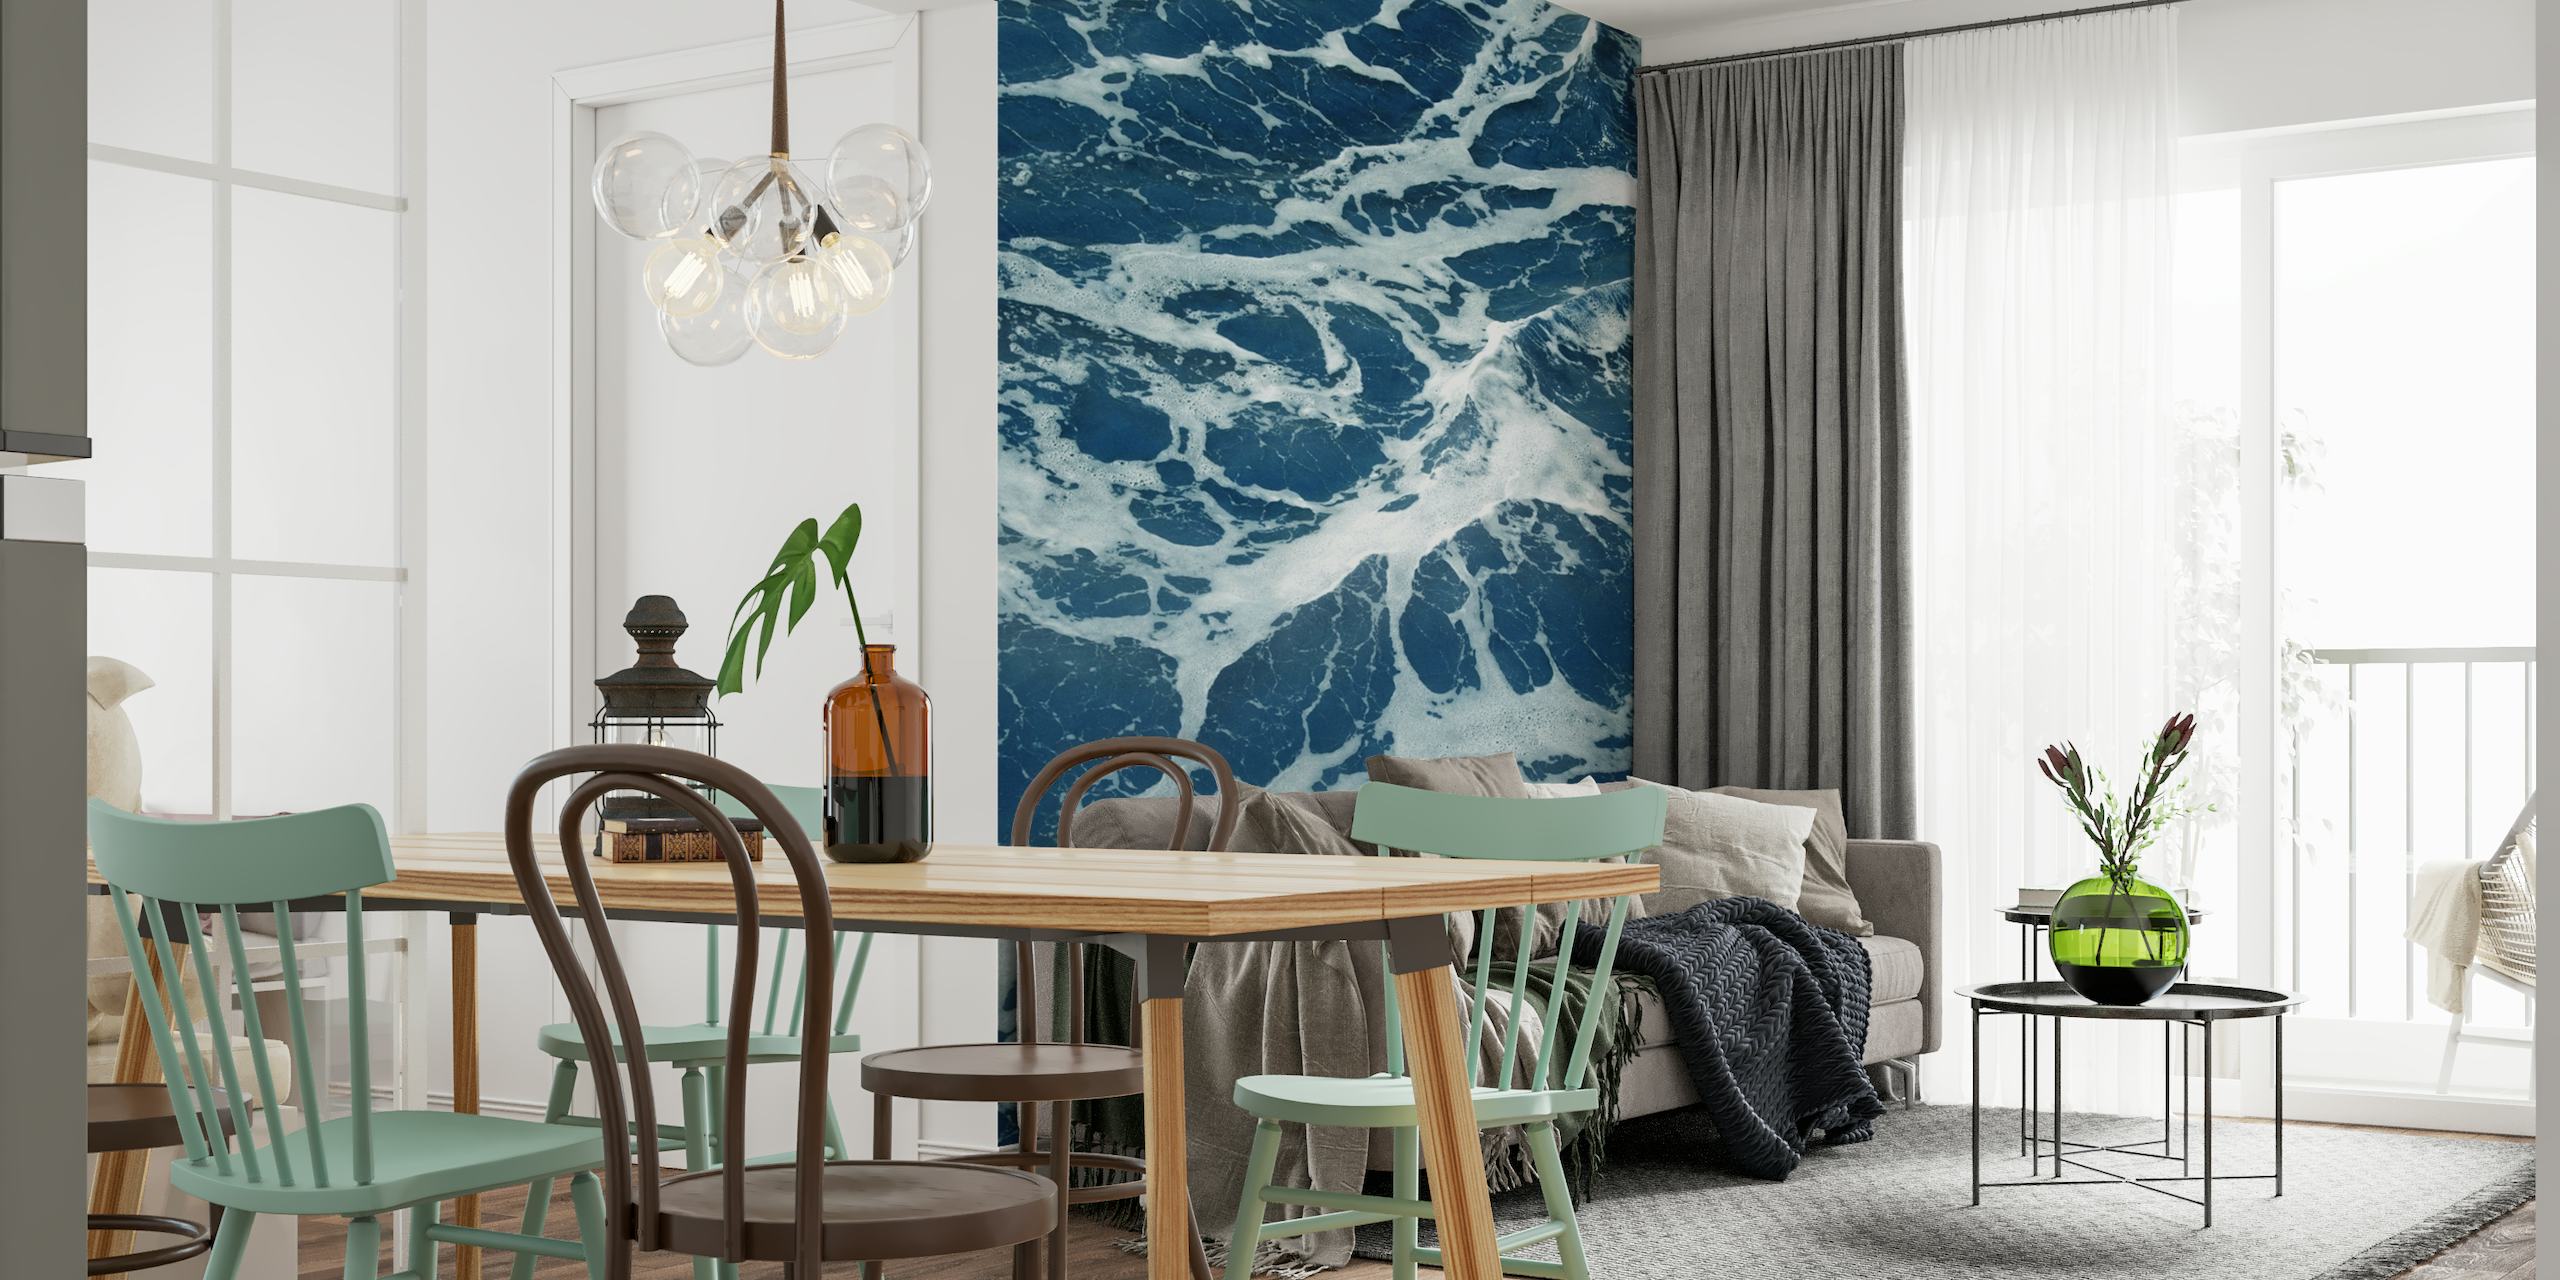 Papier peint mural vagues de l'océan Atlantique avec de l'écume de mer blanche mousseuse sur une eau d'un bleu profond.